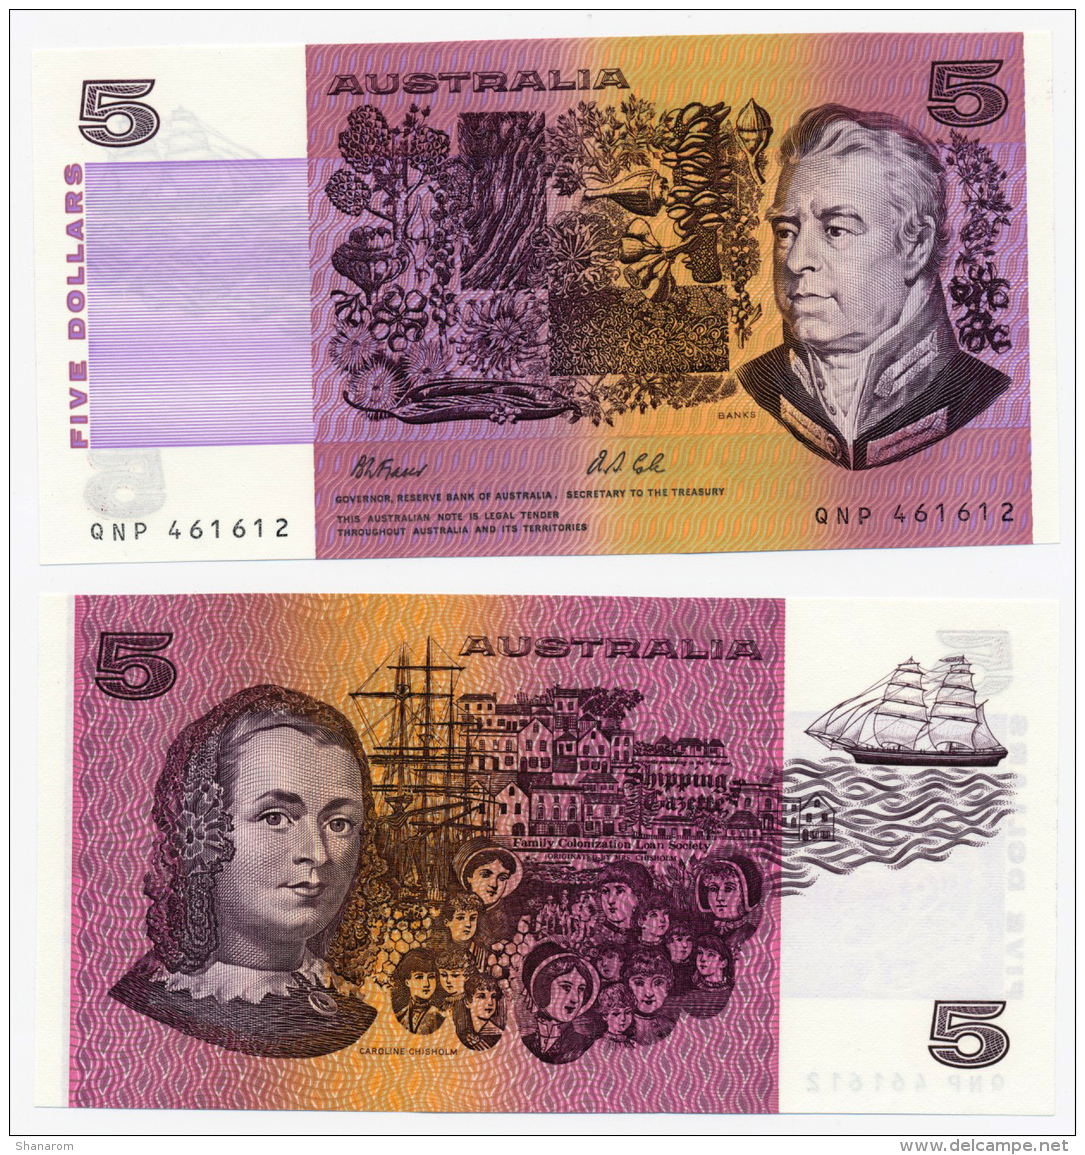 1995 // AUSTRALIA //  5 $ // UNC - 1992-2001 (kunststoffgeldscheine)